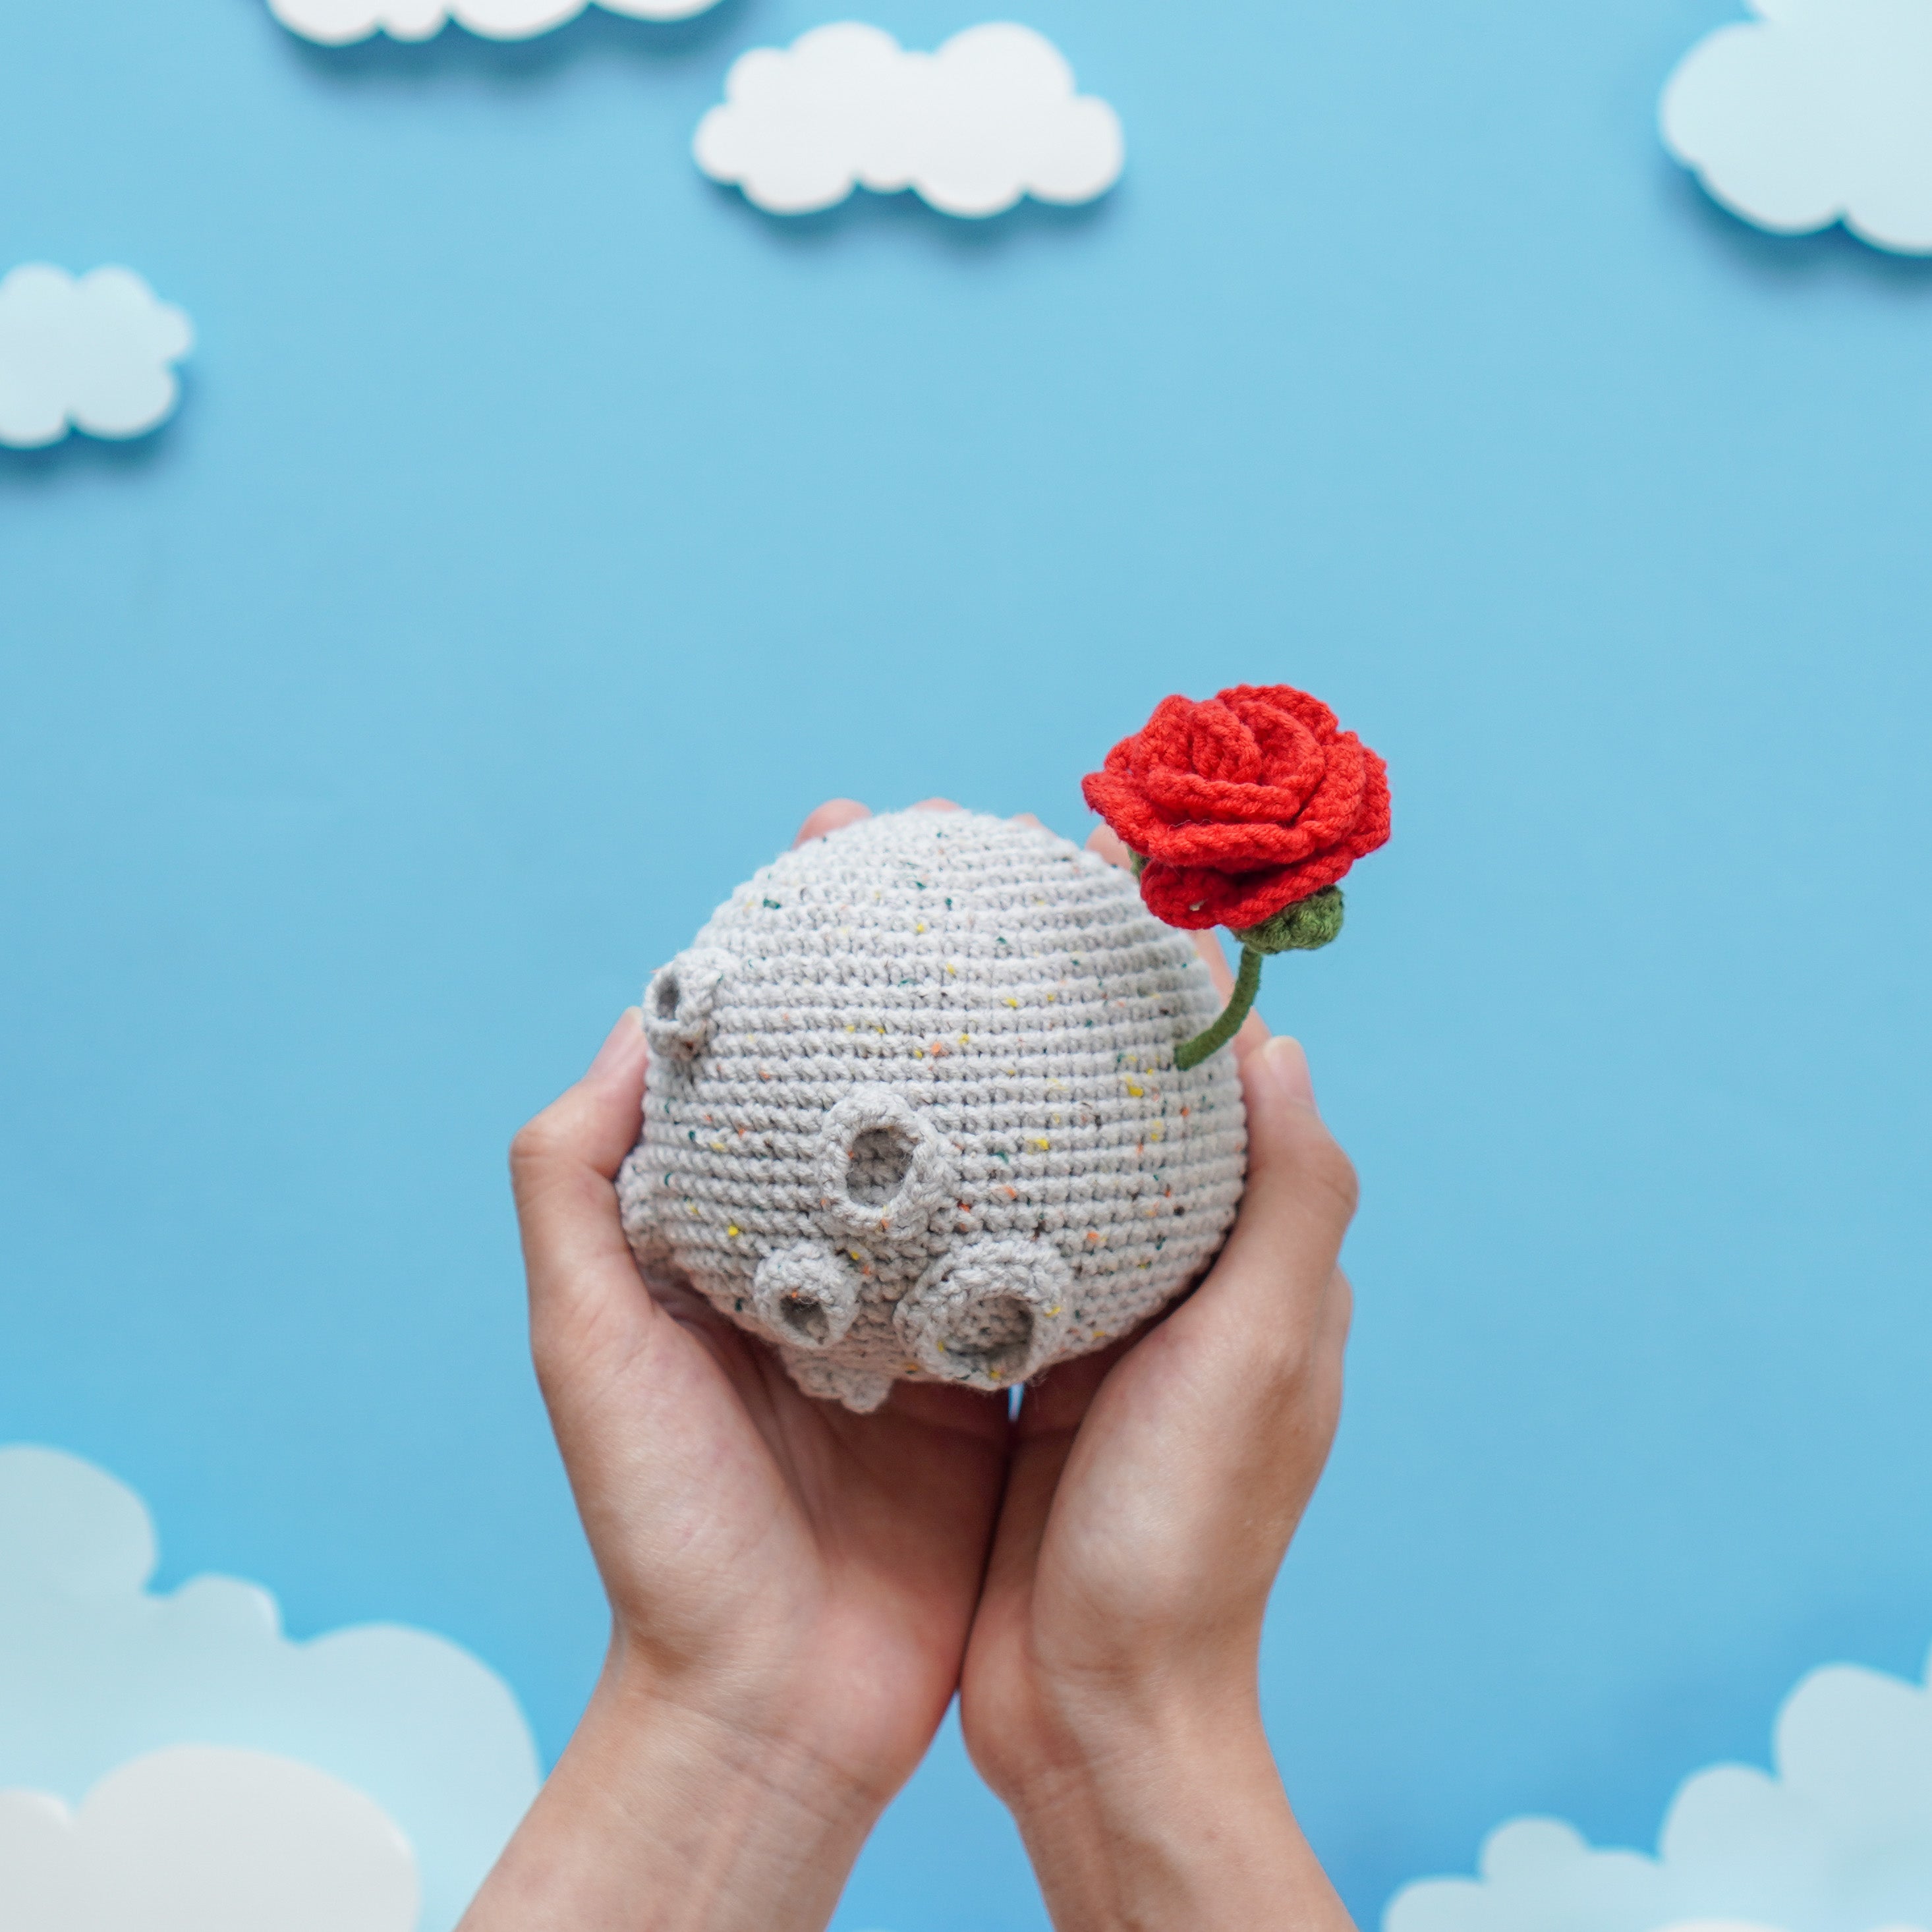 Little Prince Crochet Pattern by Aquariwool Crochet (Crochet Doll Pattern/Amigurumi Pattern for Baby gift)